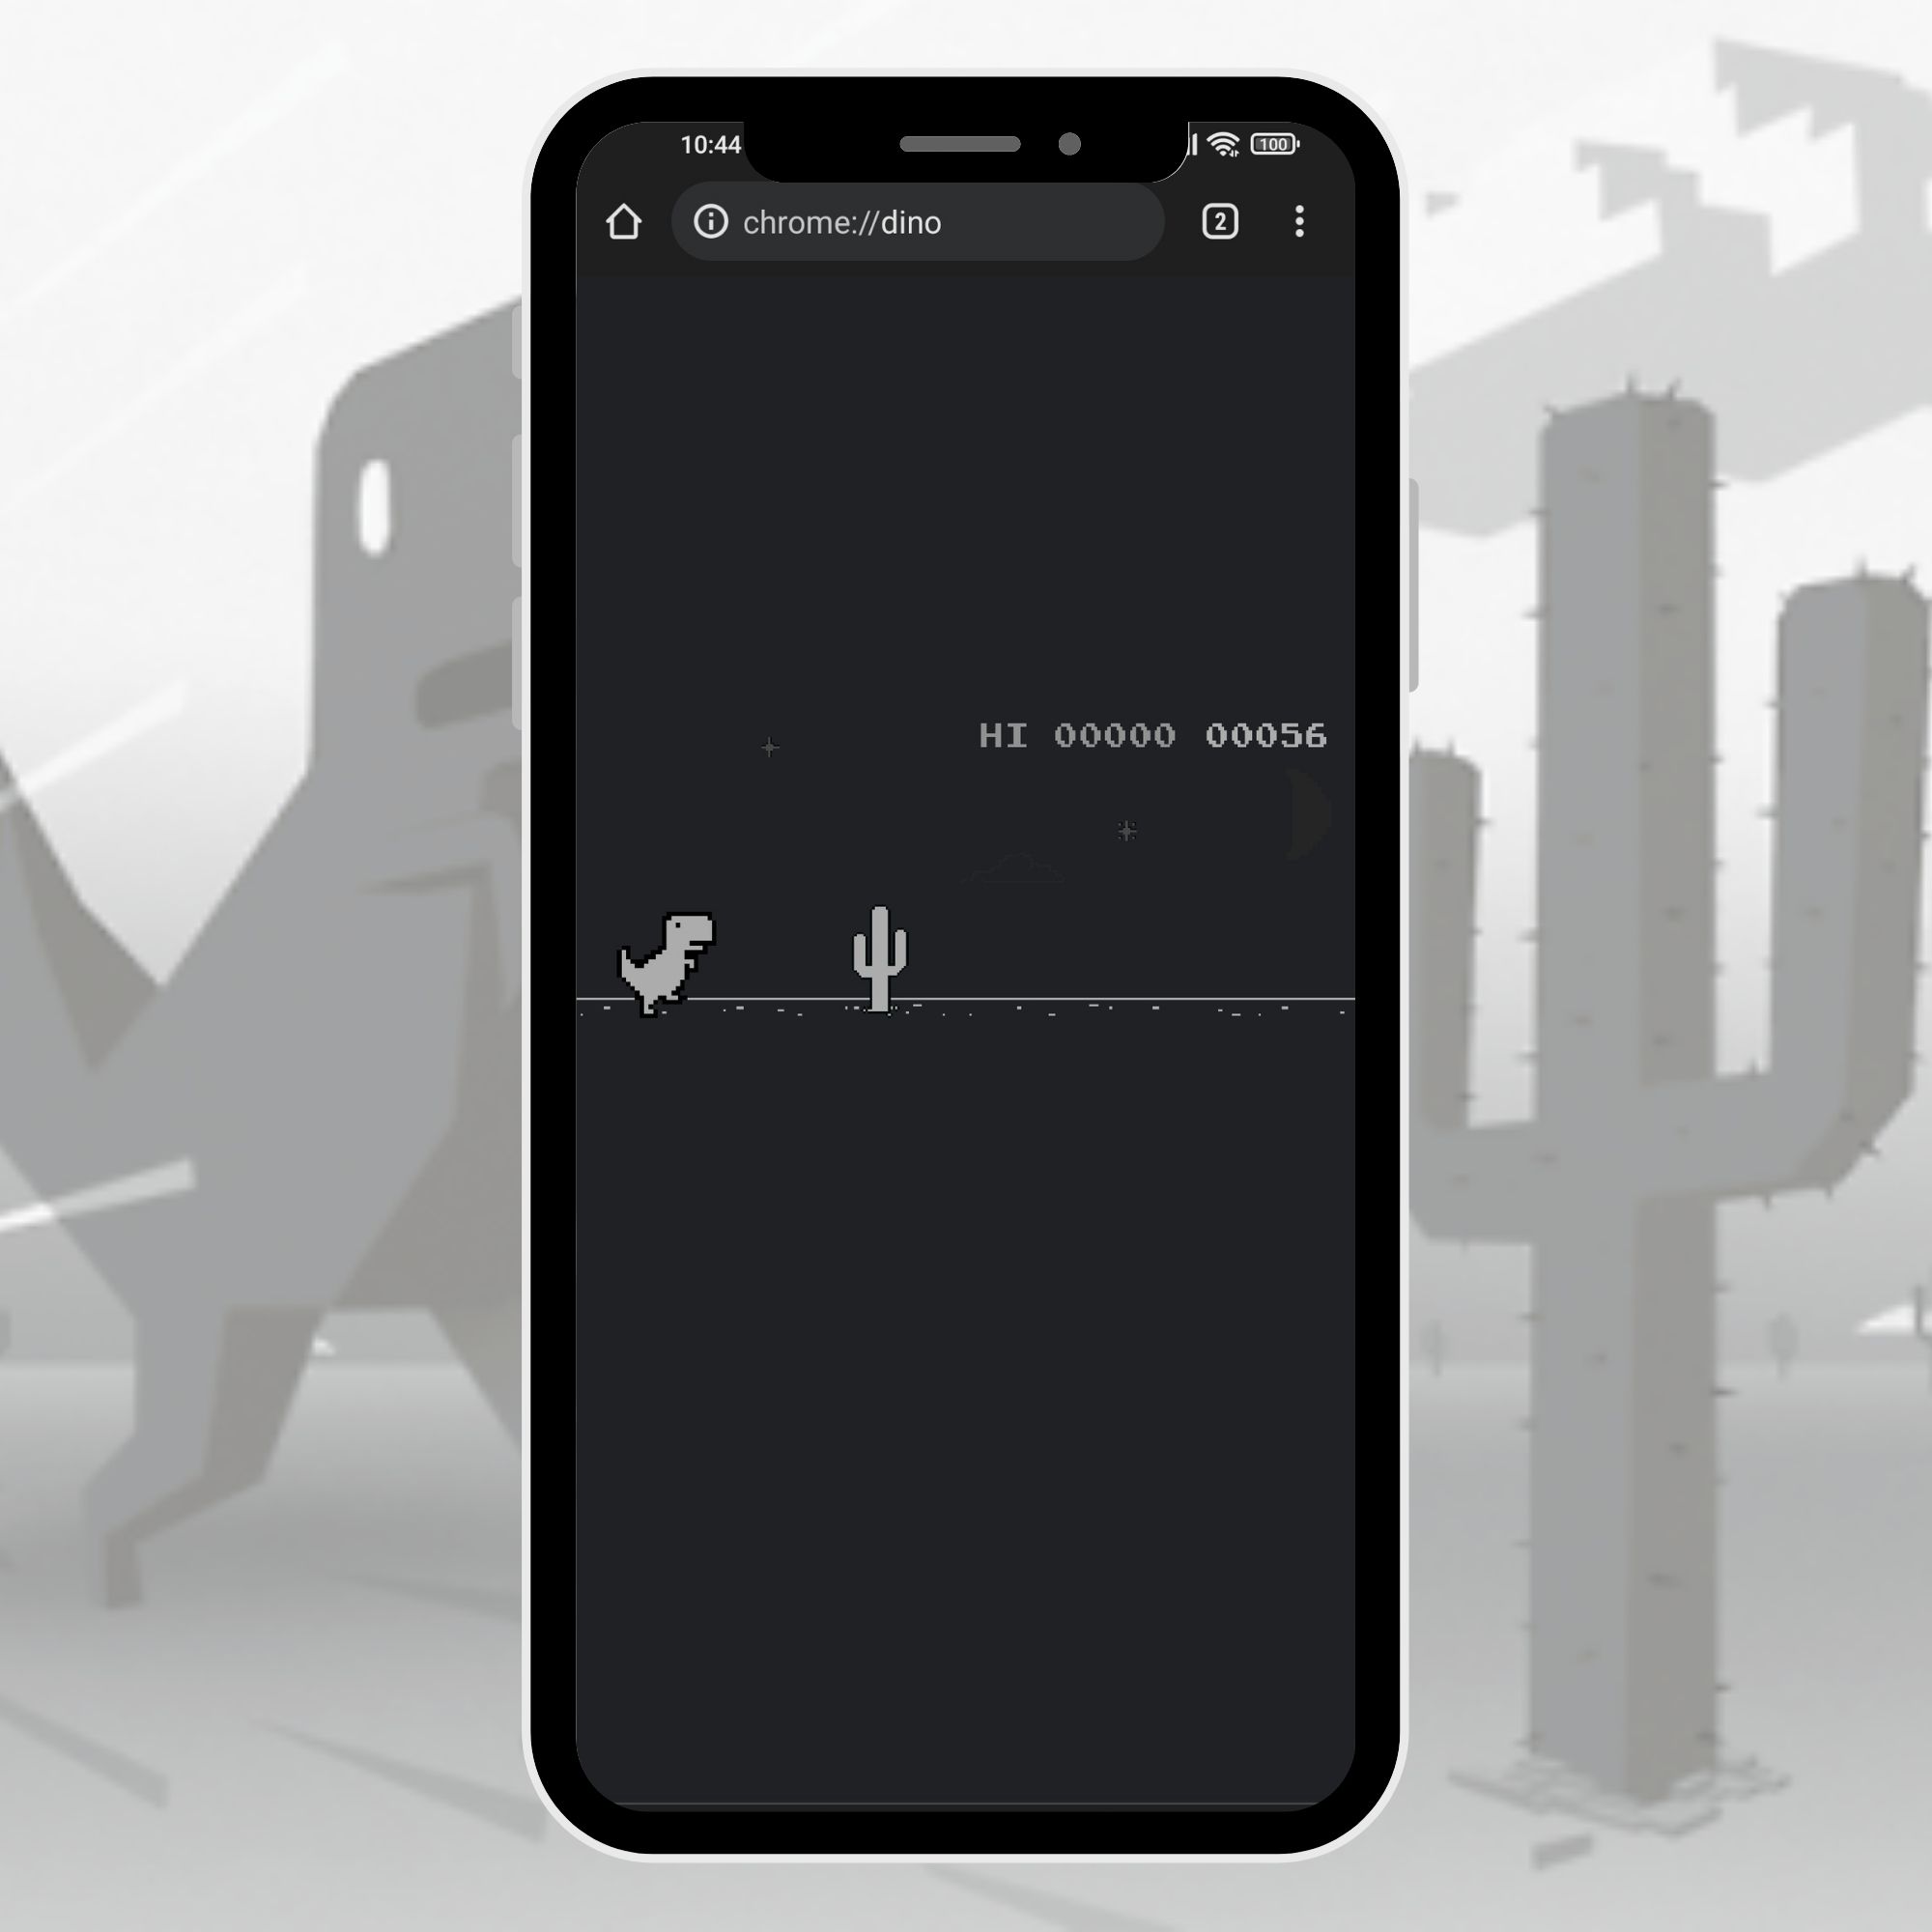 Vuakiemhiep - Trang thông tin công nghệ mới nhất 7-25 Mang widget của tựa game khủng long "huyền thoại" lên màn hình Android cực đơn giản 